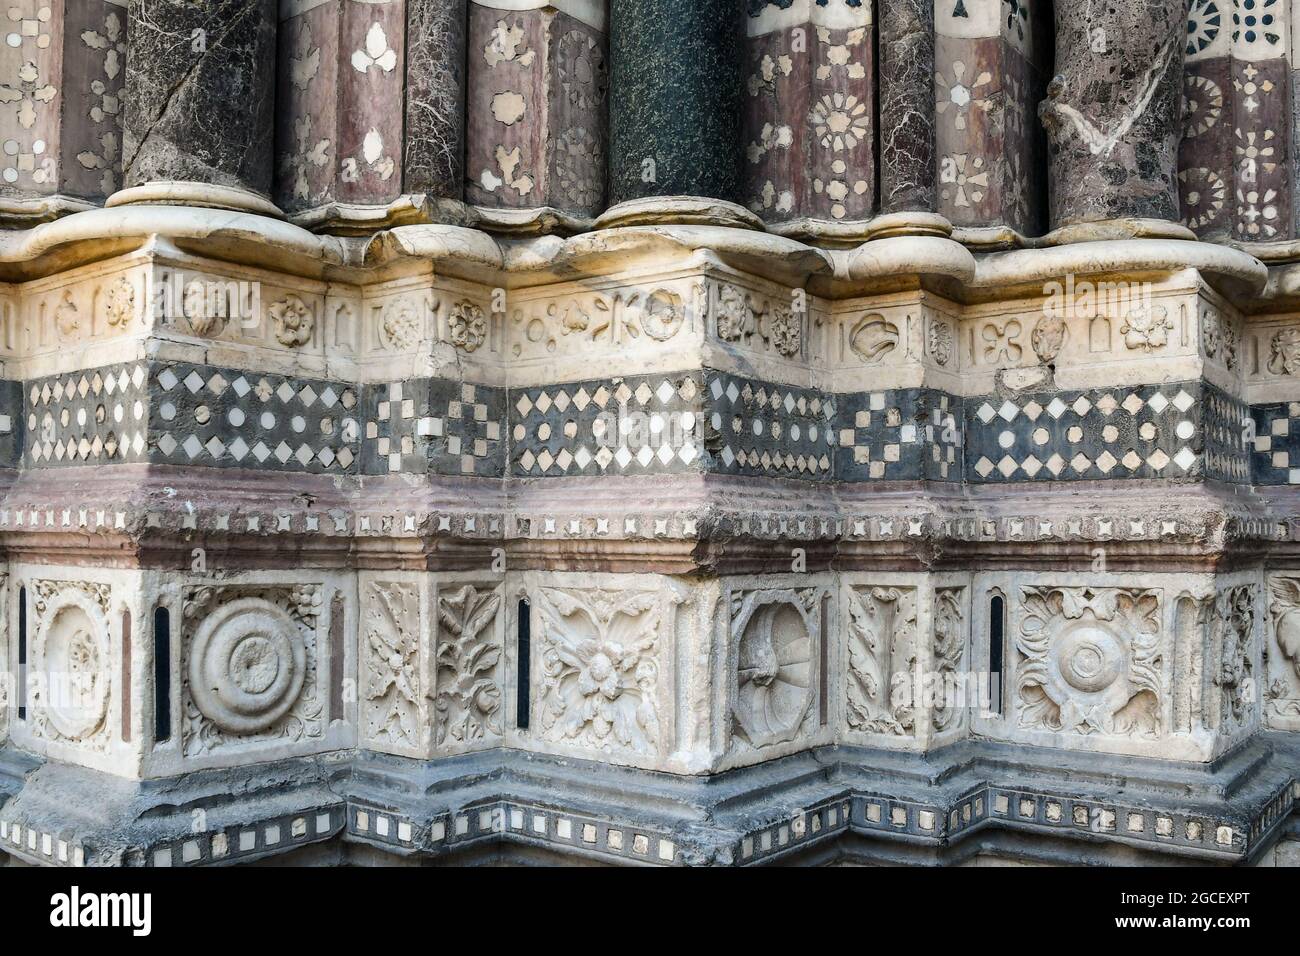 Particolare della façade facciata della Cattedrale di San Lorenzo nel centro storico di Genova, con bassorilievo in marmo e mosaico, Liguria, Italia Foto Stock